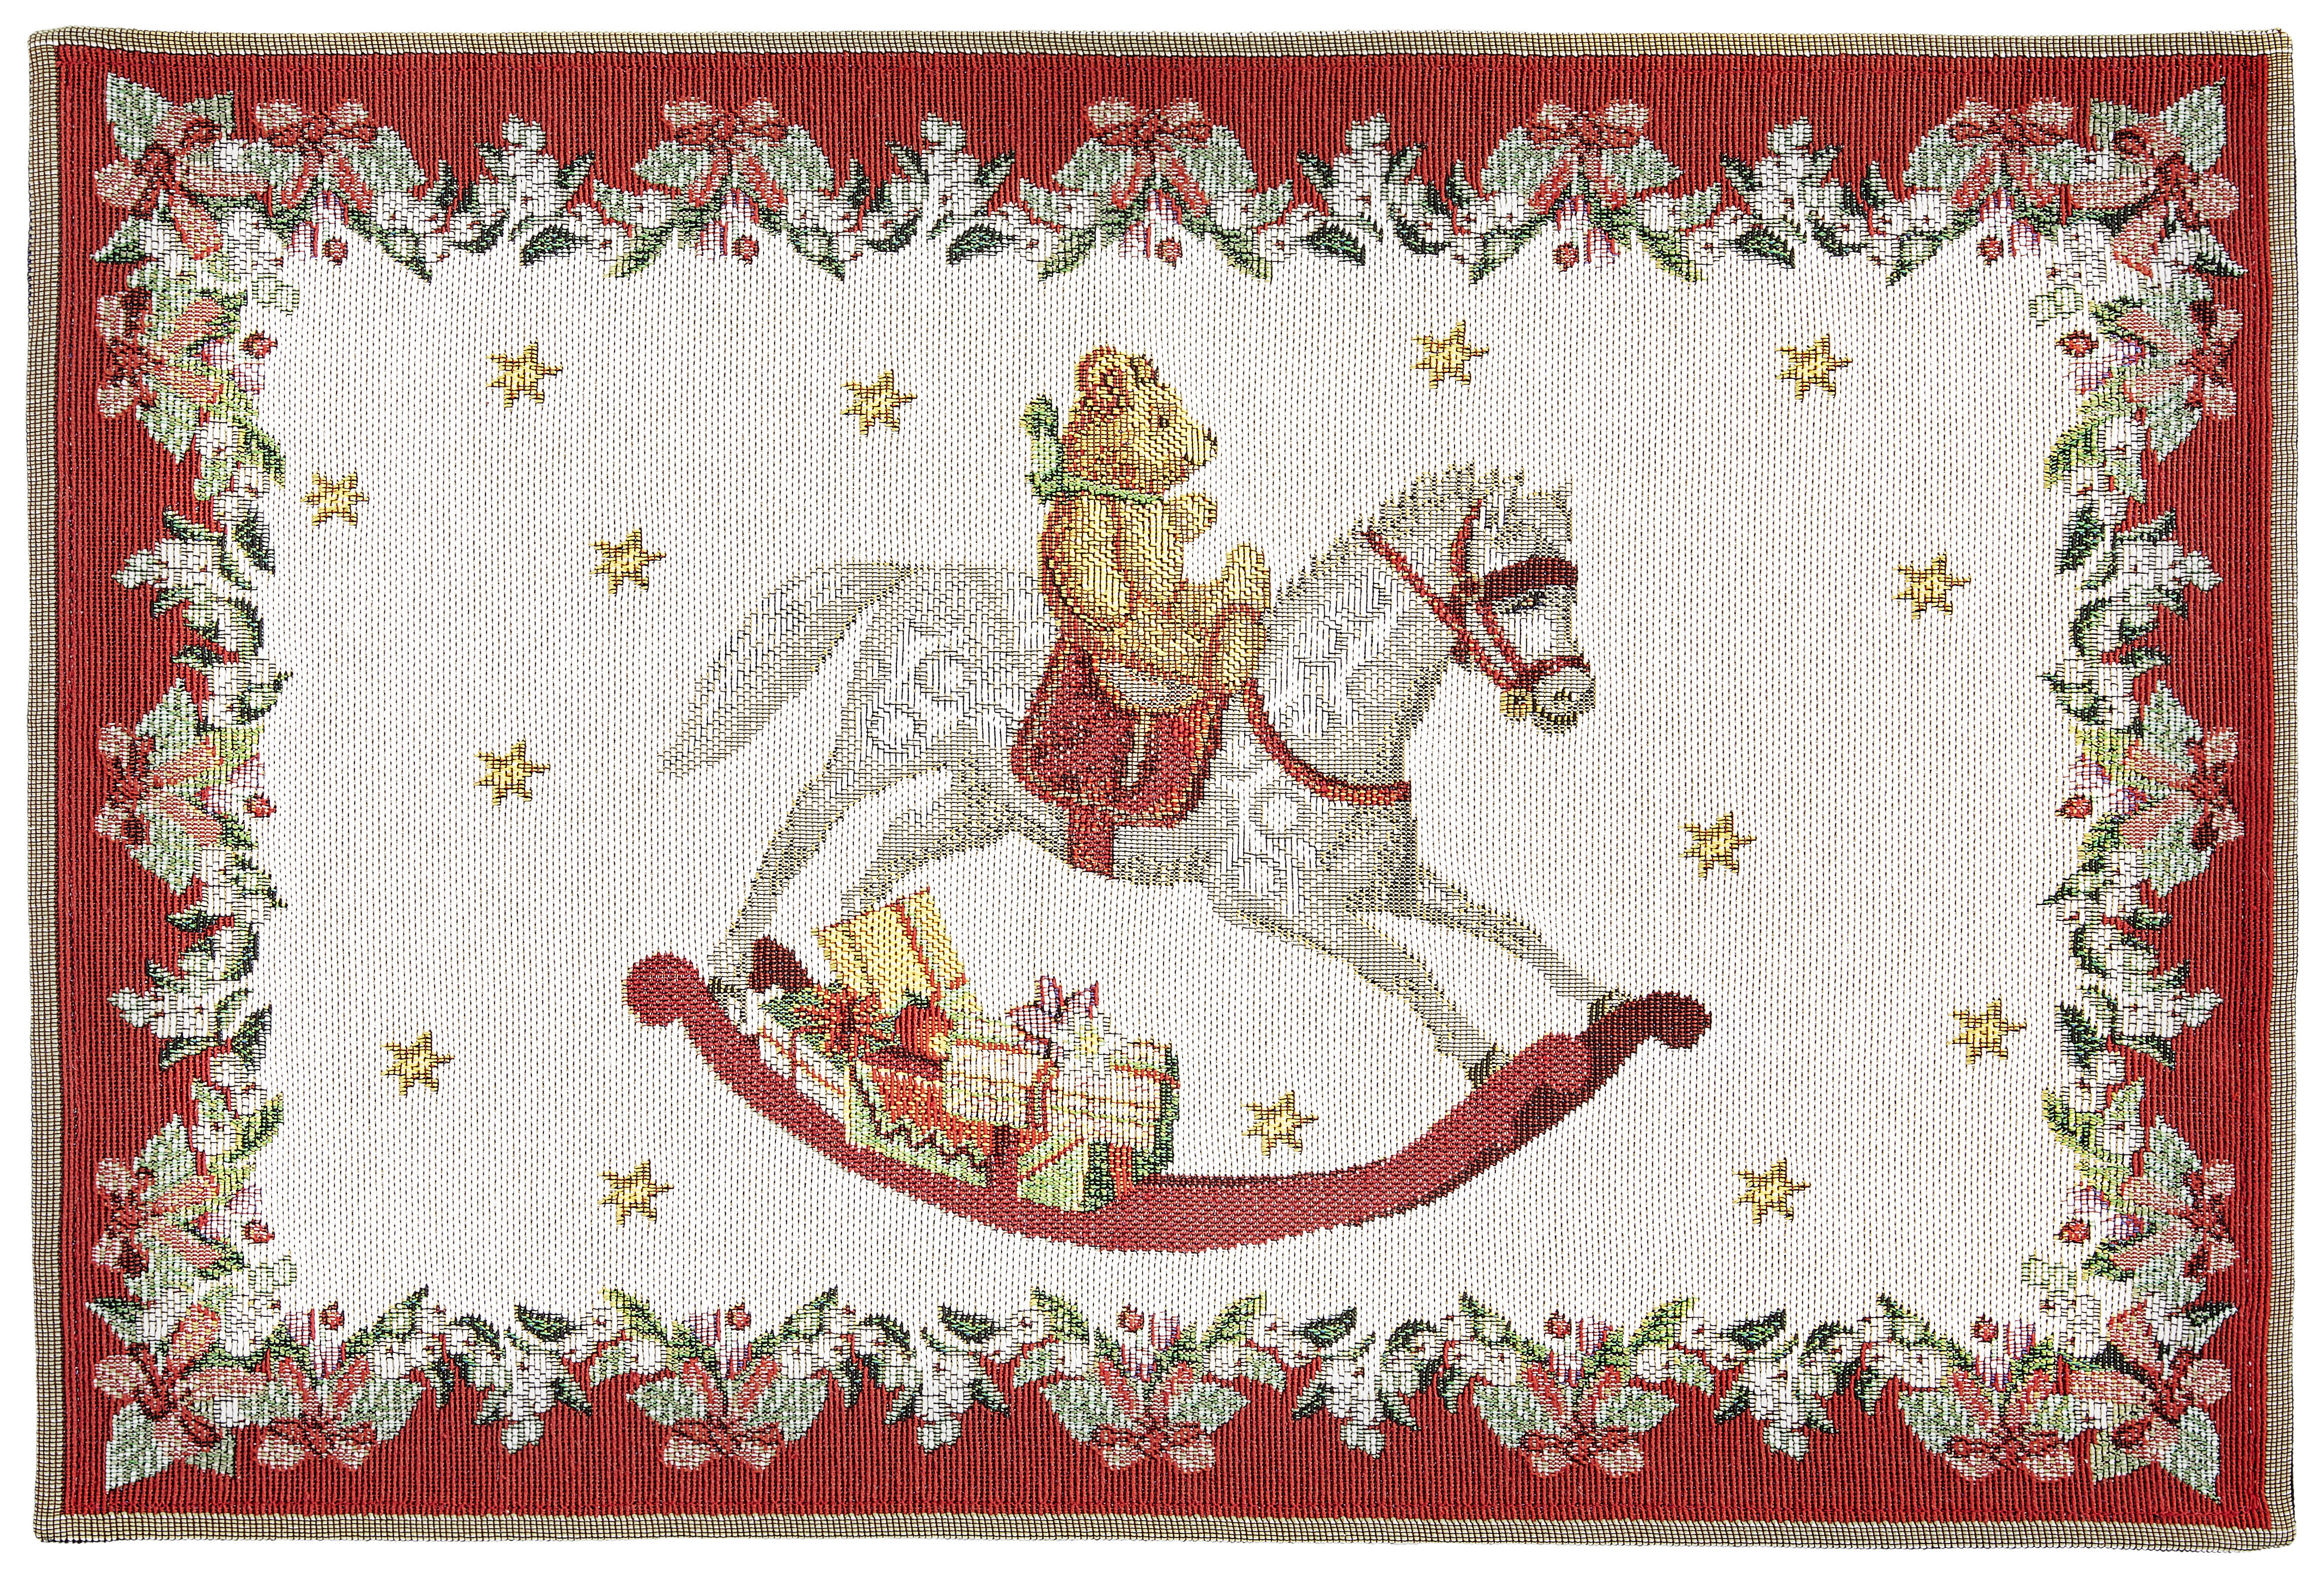 TISCHSET Textil Grün, Rot, Weiß 32/48 cm  - Rot/Weiß, Trend, Textil (32/48cm) - Villeroy & Boch